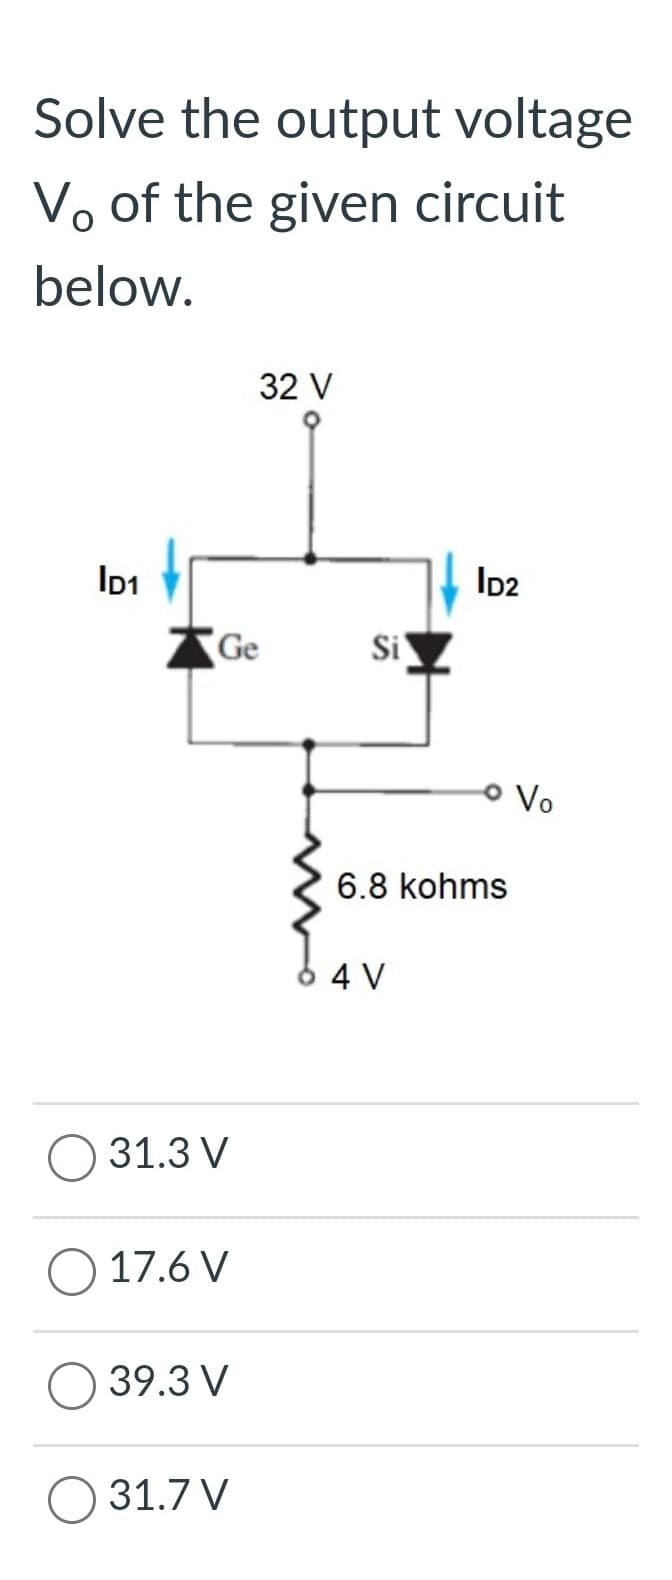 Solve the output voltage
Vo of the given circuit
below.
ID1
Ge
31.3 V
17.6 V
39.3 V
32 V
31.7 V
Si
ID2
6.8 kohms
64 V
Vo